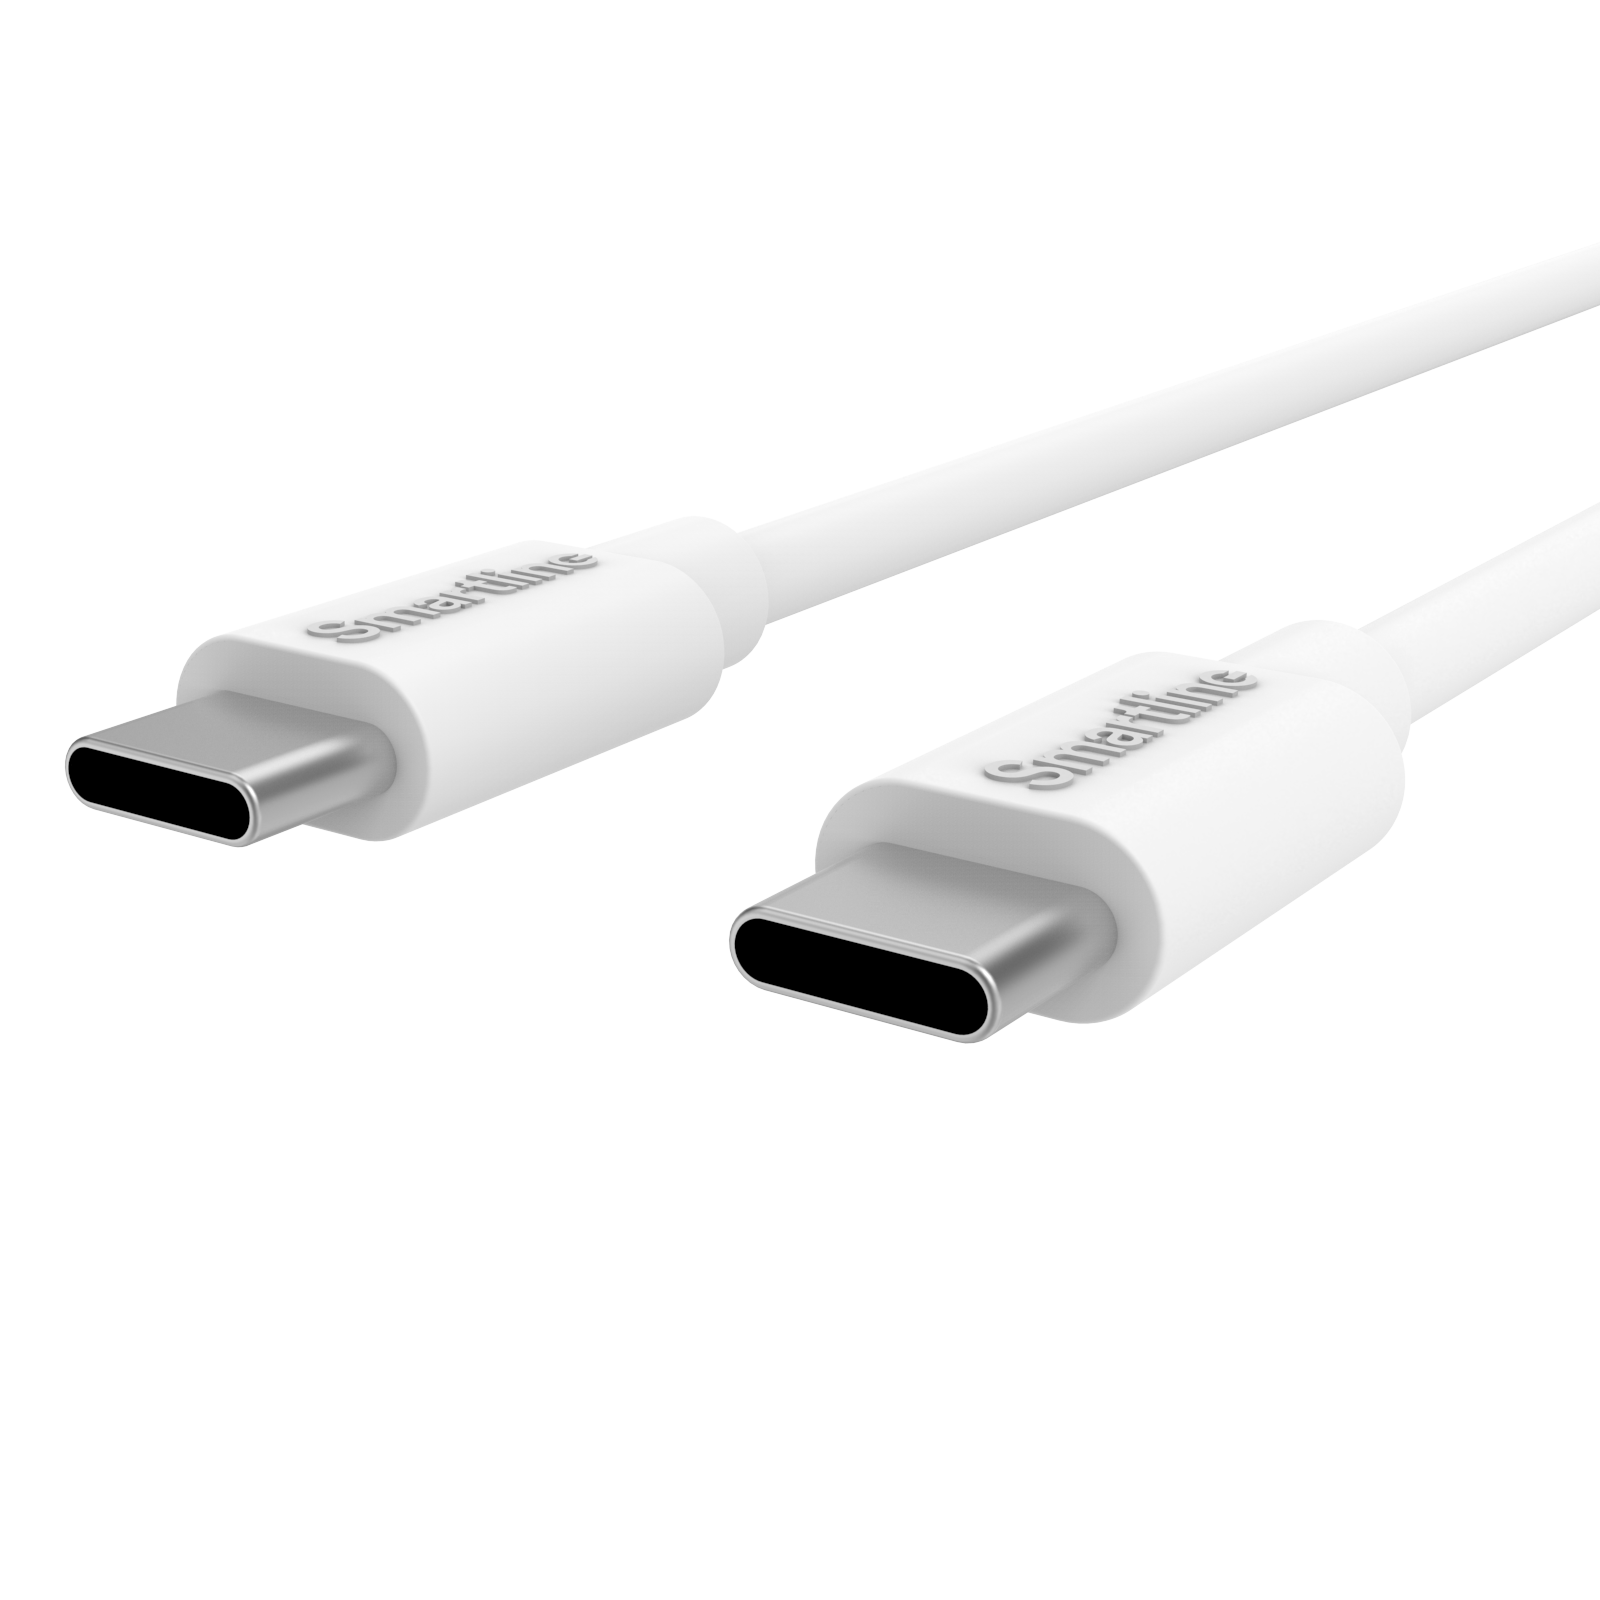 Cargador para el automóvil completo - Cable USB-C de 1m y cargador USB-C- Smartline